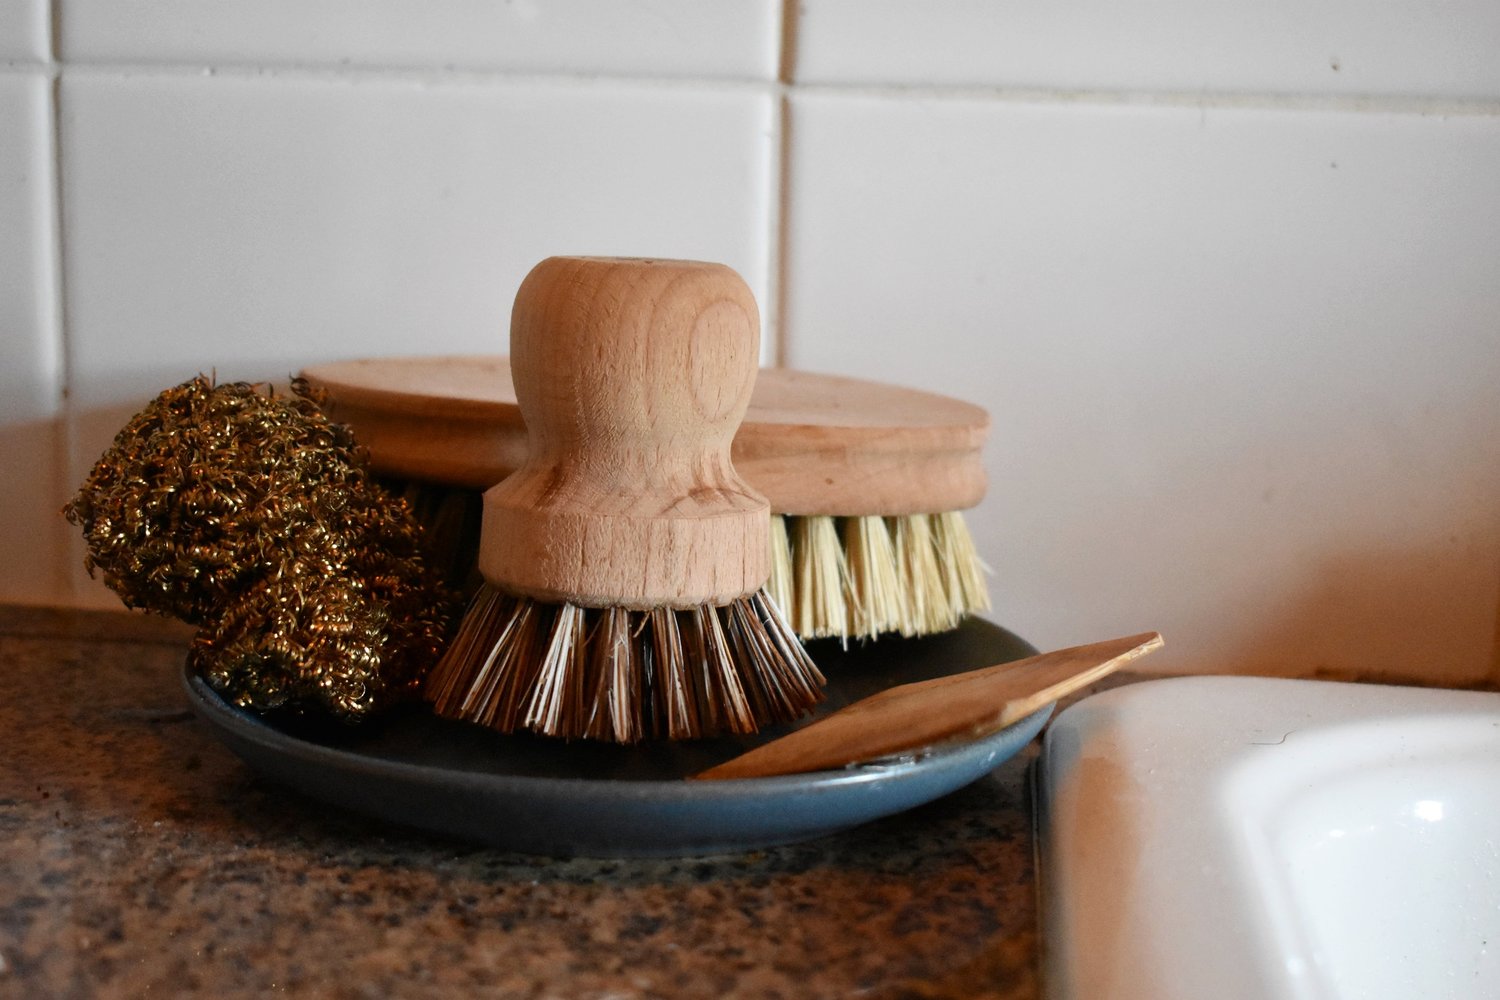 Zero - Waste Dish Brush Replacement Head